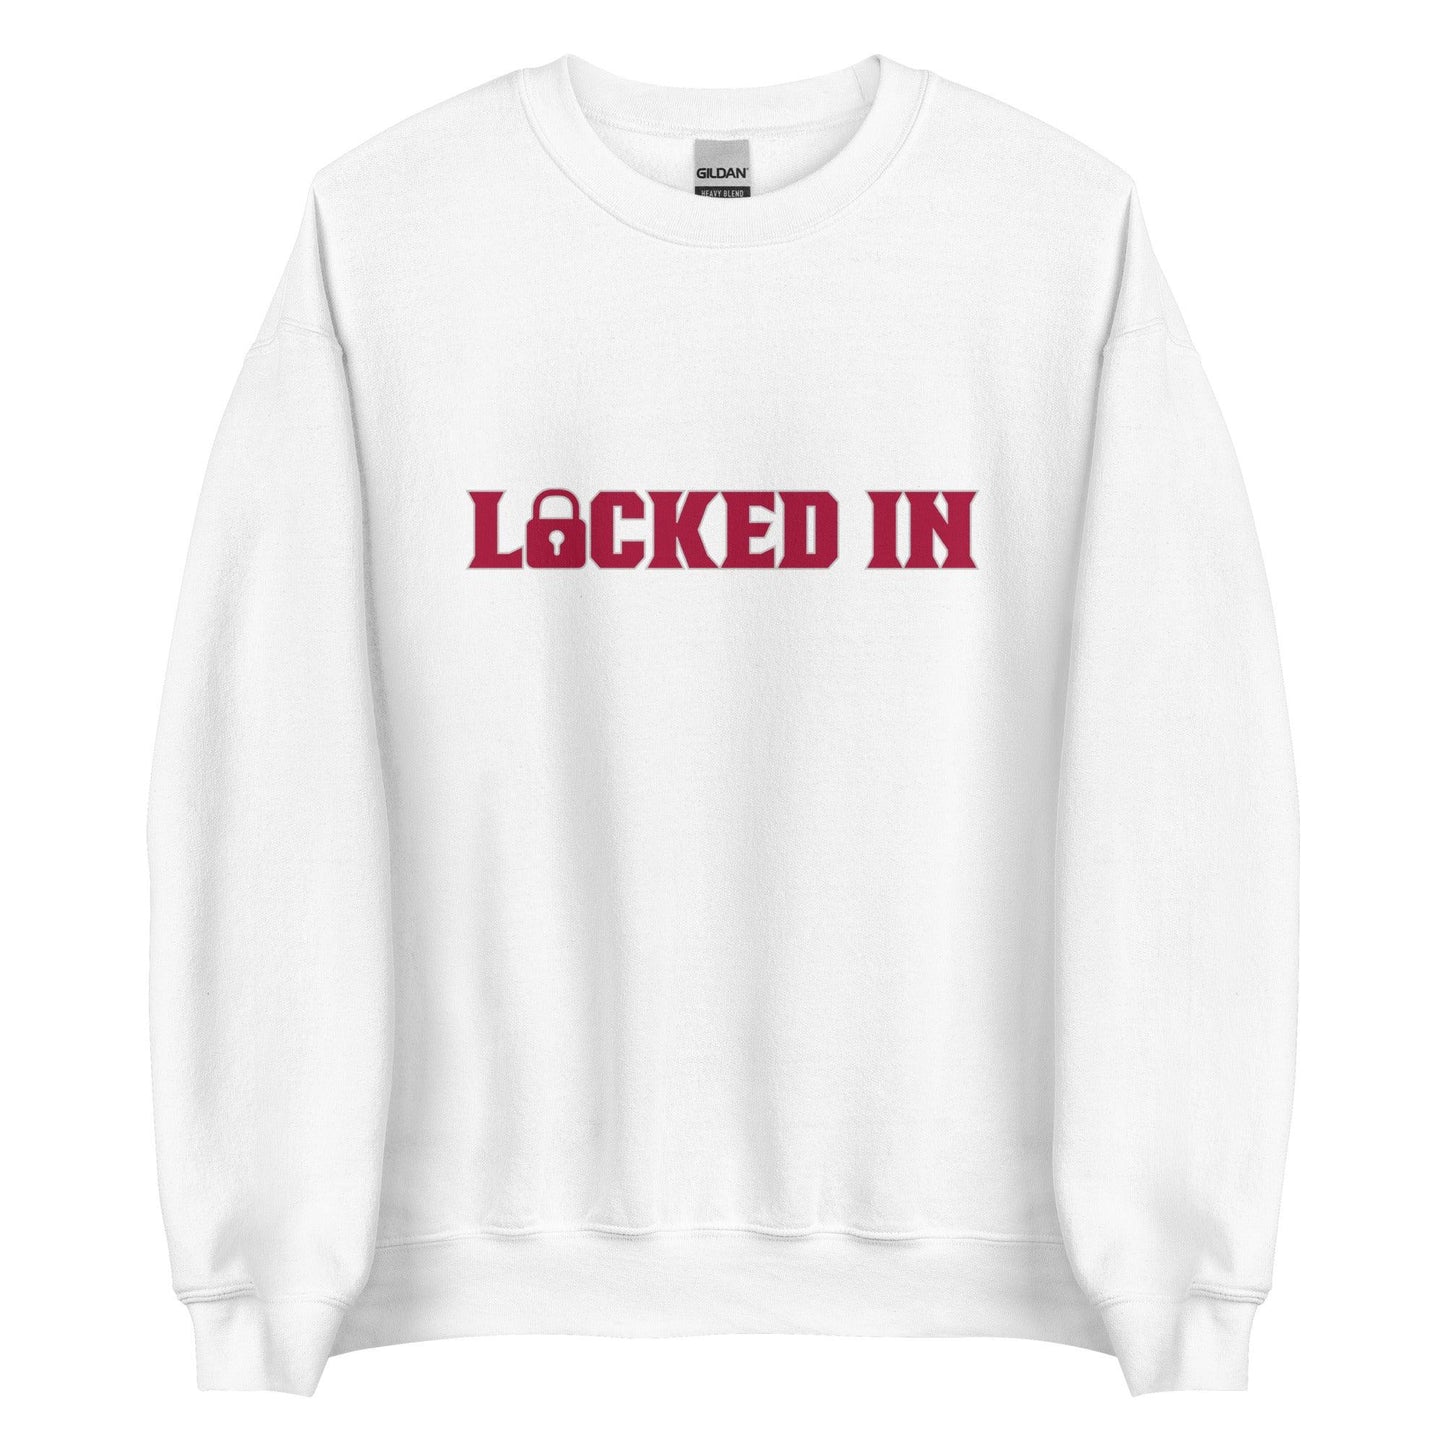 Monkell Goodwine "Locked In" Sweatshirt - Fan Arch